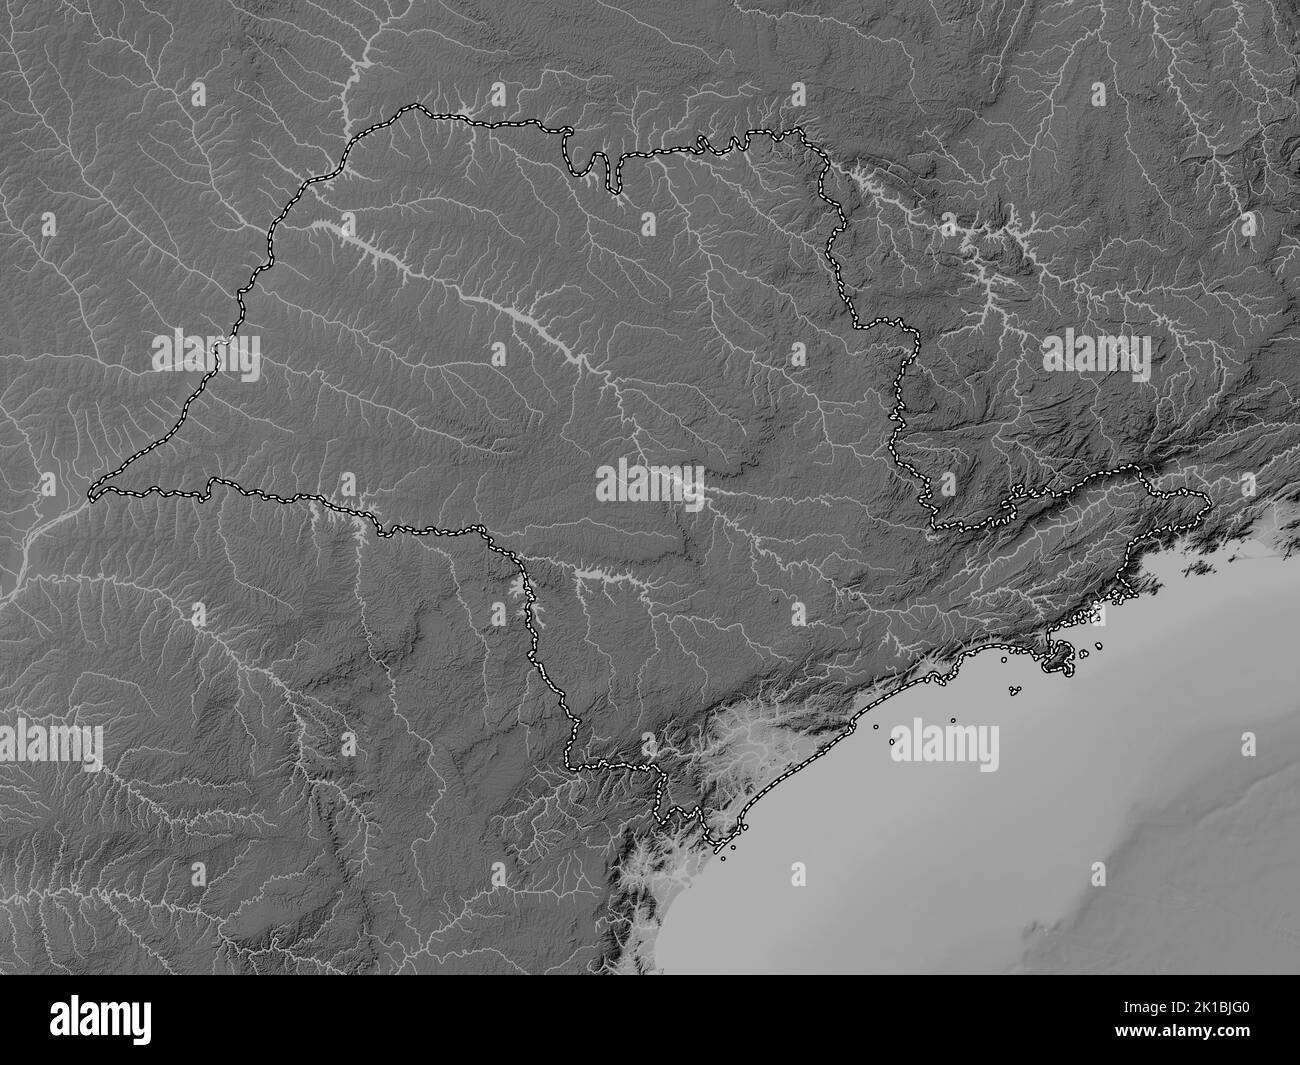 San Paolo, stato del Brasile. Mappa in scala di grigi con laghi e fiumi Foto Stock